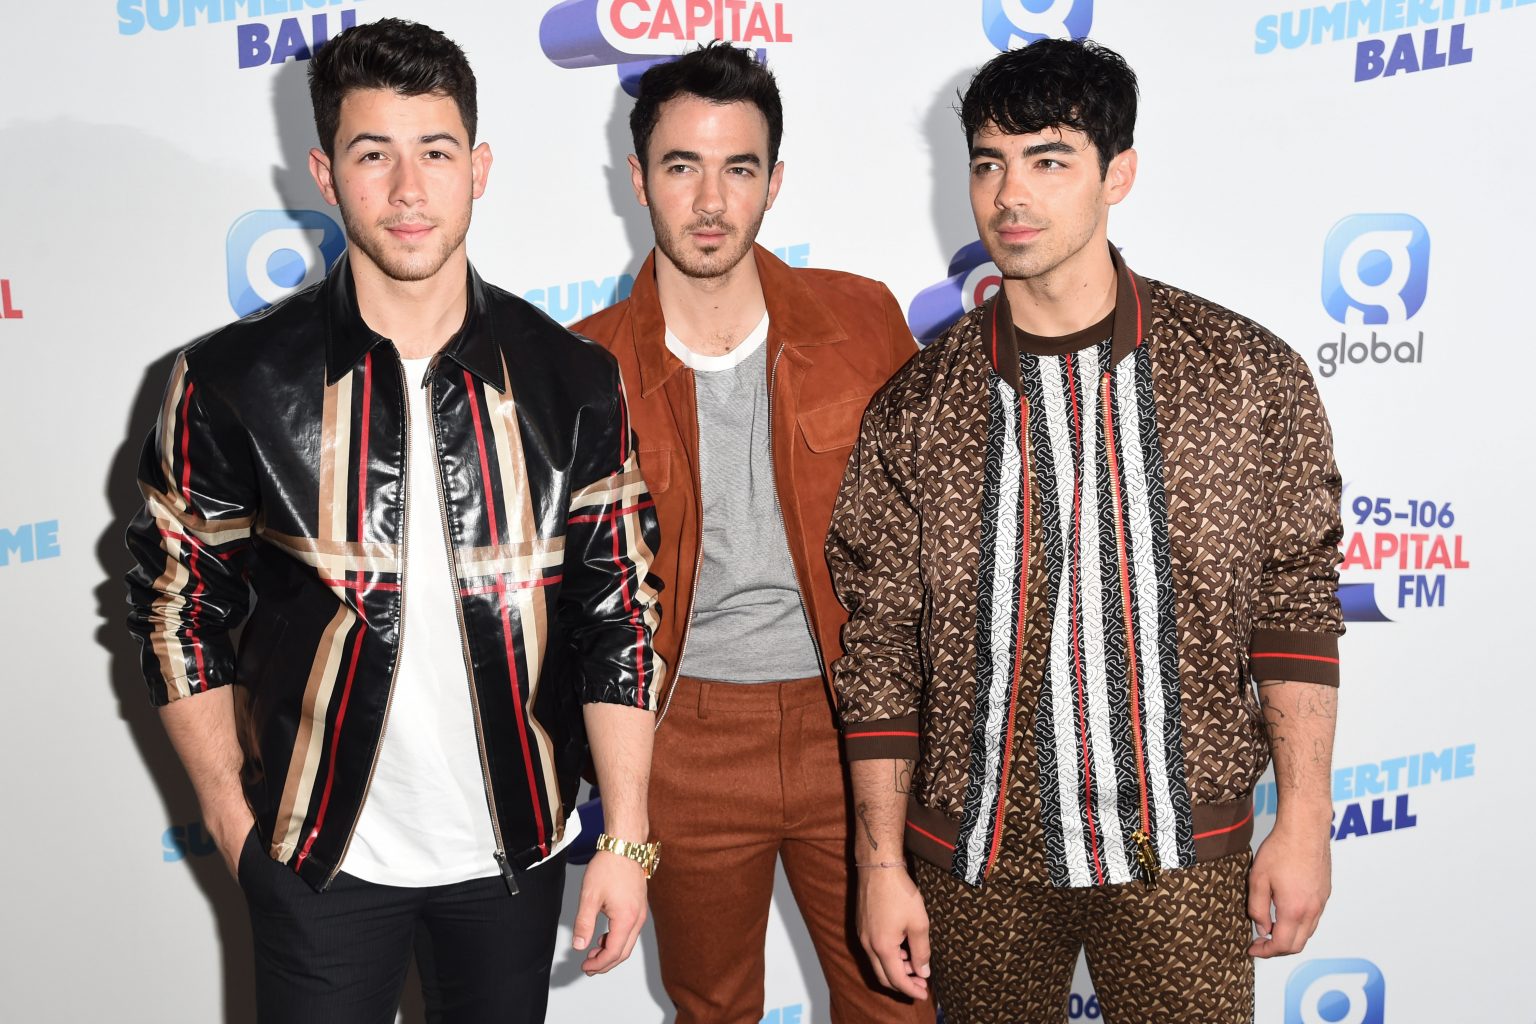 Jonas Brothers Sorgen Mit Kardashian Parodie Für Lacher Im Netz